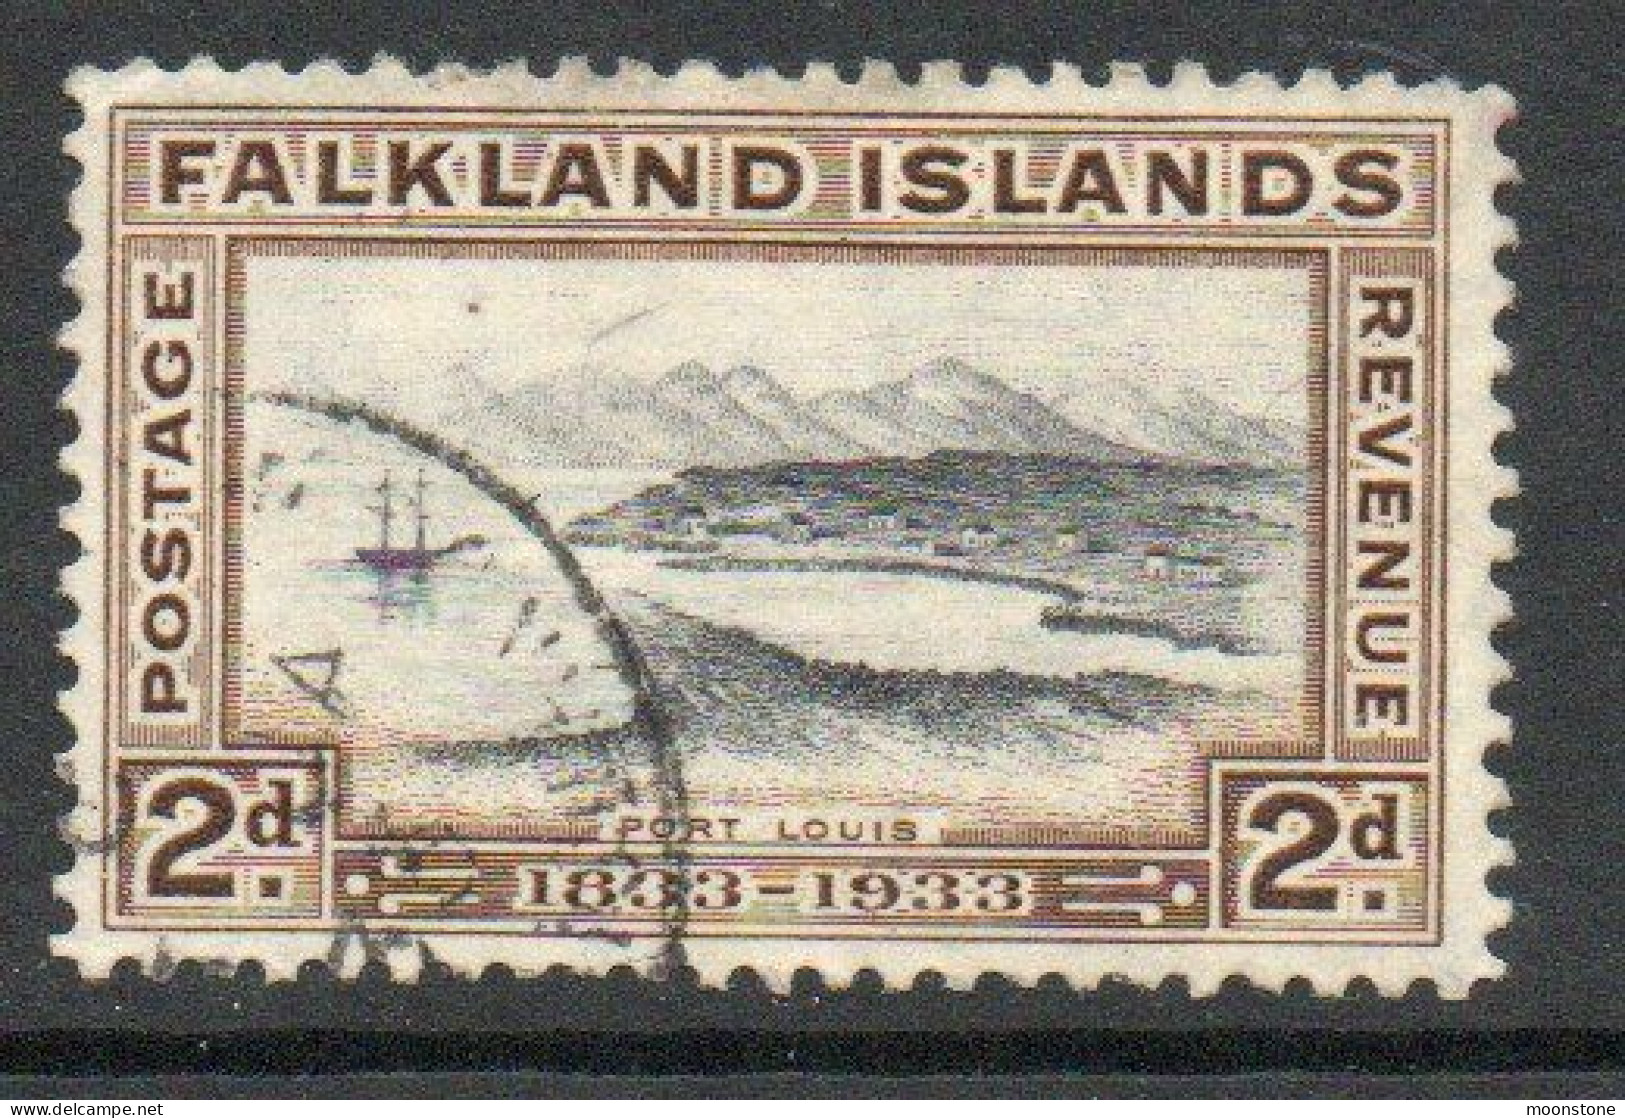 Falkland Islands GV 1933 Centenary 2d Value, Wmk. Multiple Script CA, Used, SG 130 - Falklandeilanden